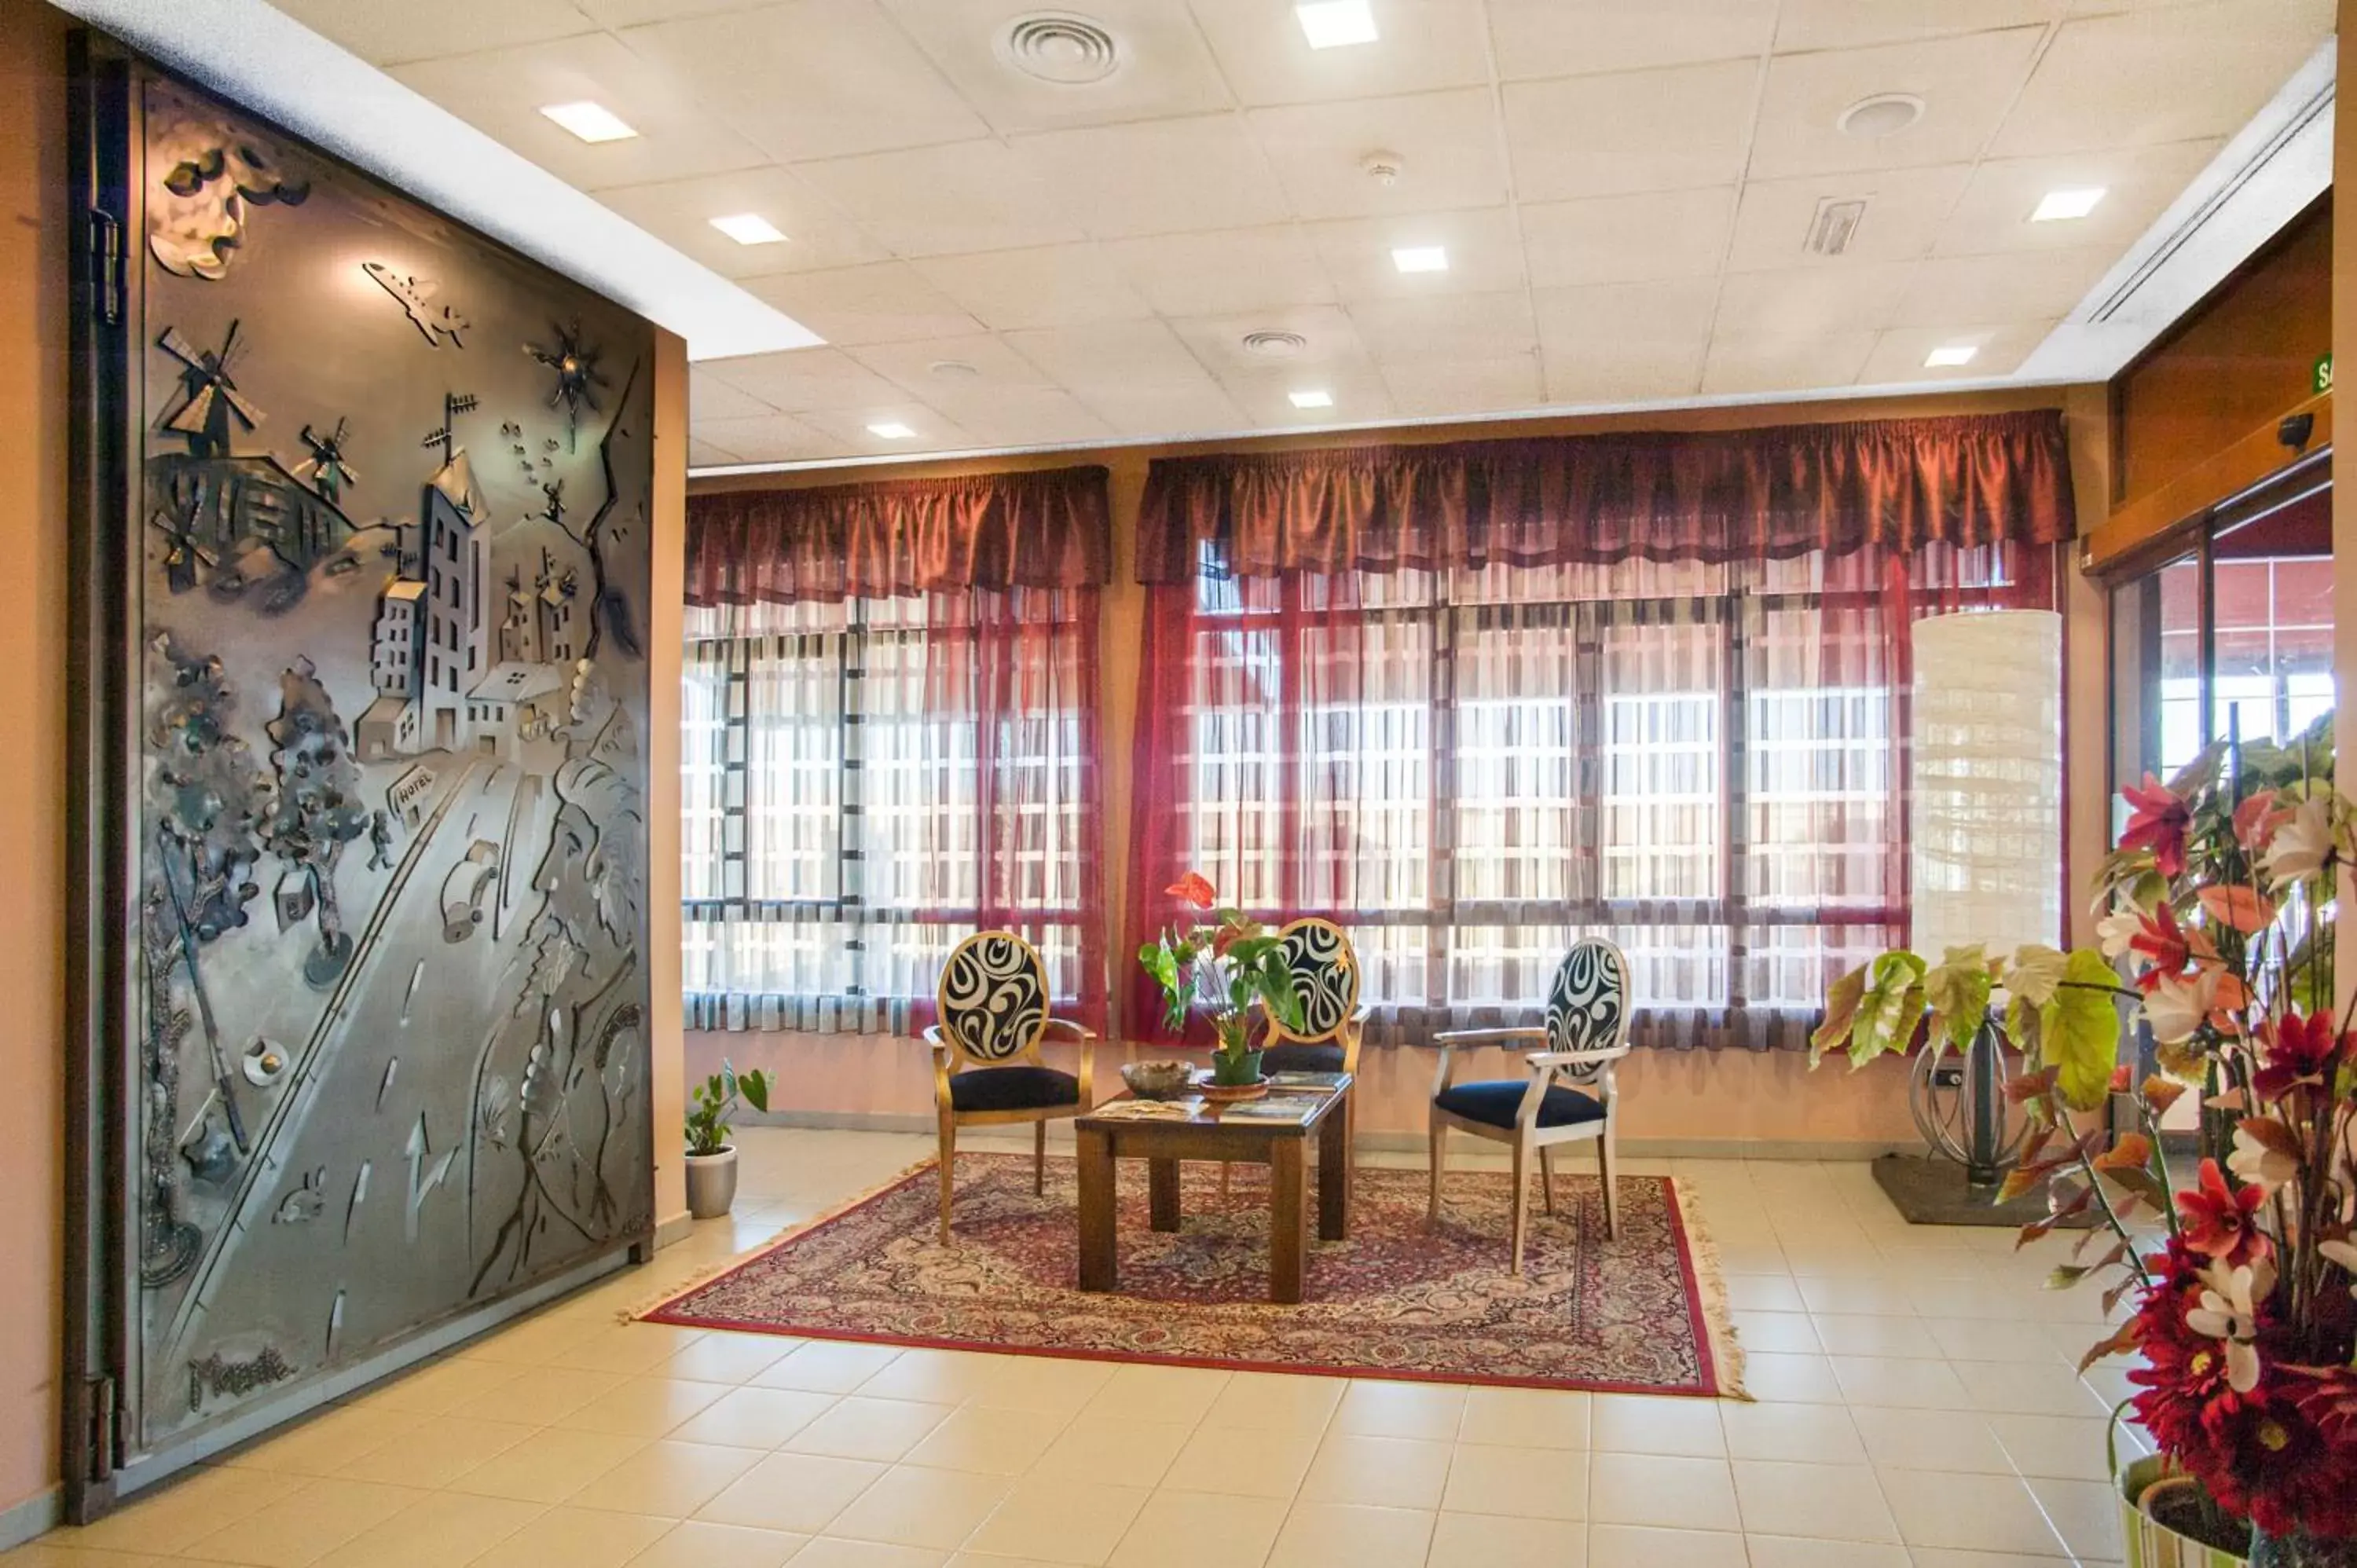 Lobby or reception in Hotel Moya